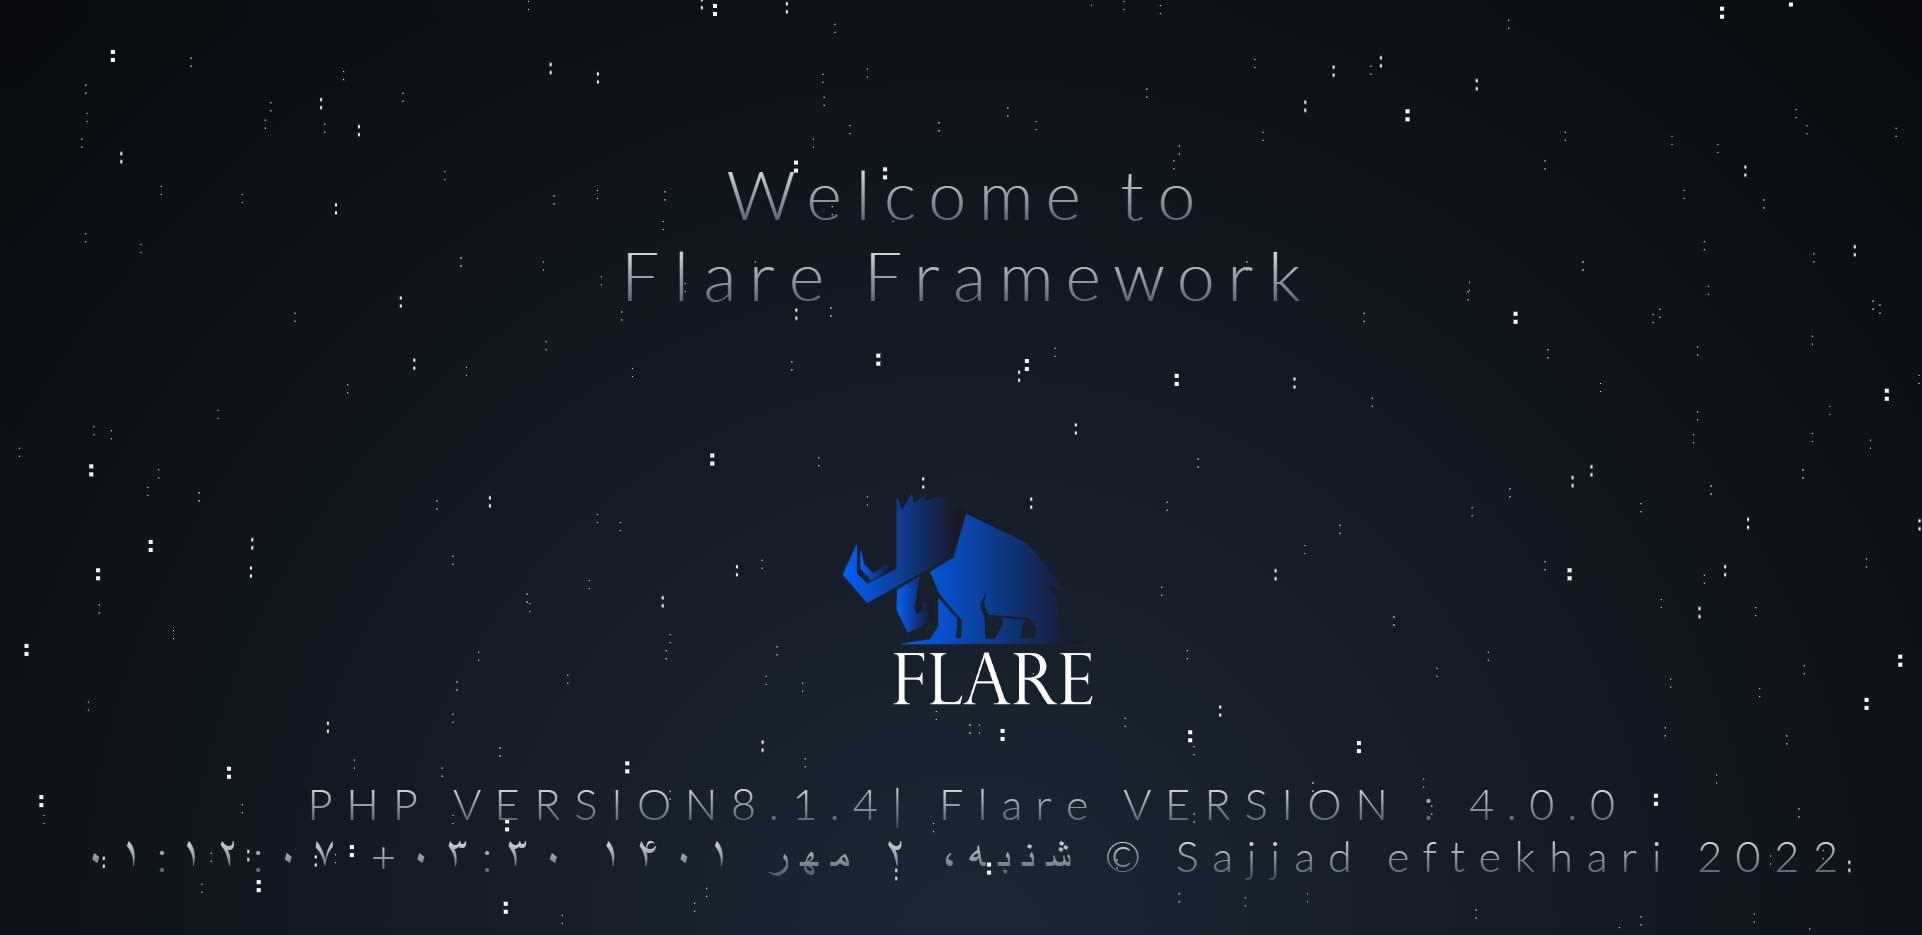 فریمورک فلر  flare frameworke 